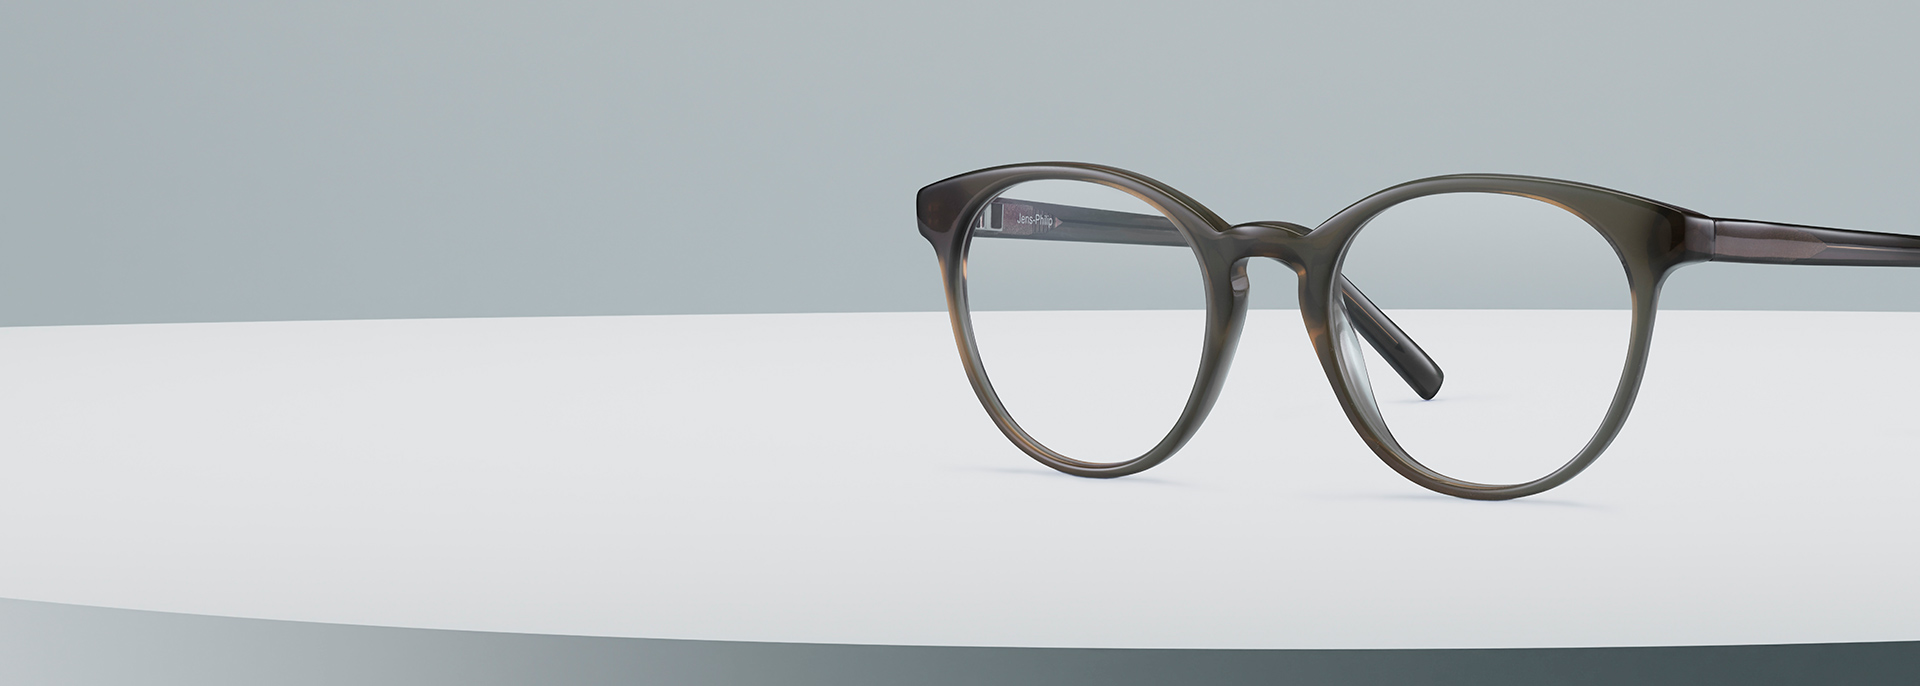 Glasögonförsäkring hos Smarteyes